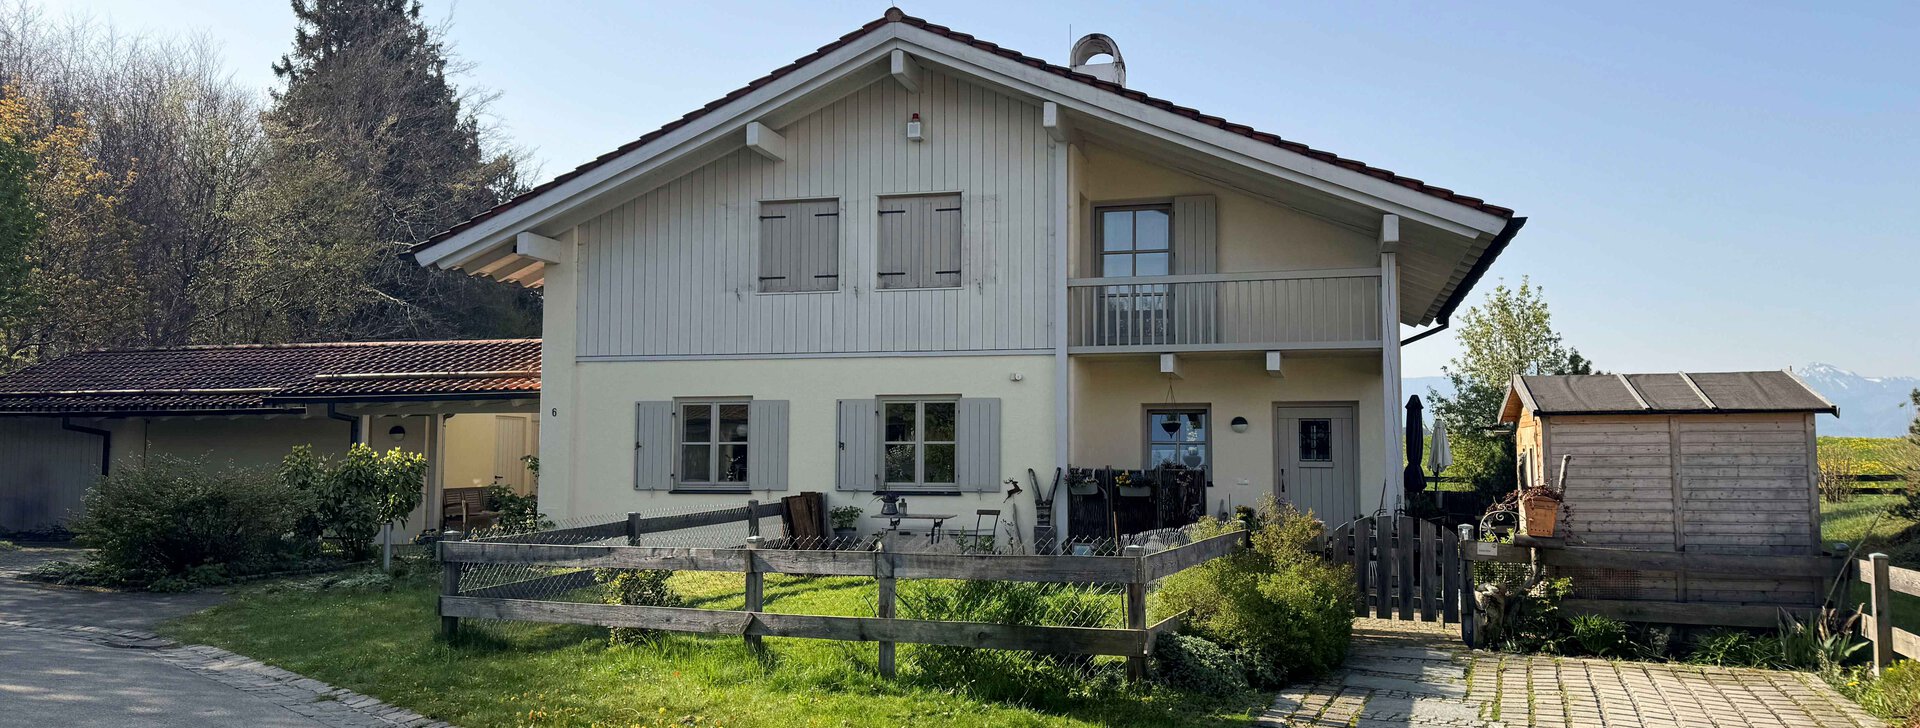 Außenansicht, Einfamilienhaus mit Einliegerwohnung, Immobilie kaufen, Traunstein | © HausBauHaus GmbH 